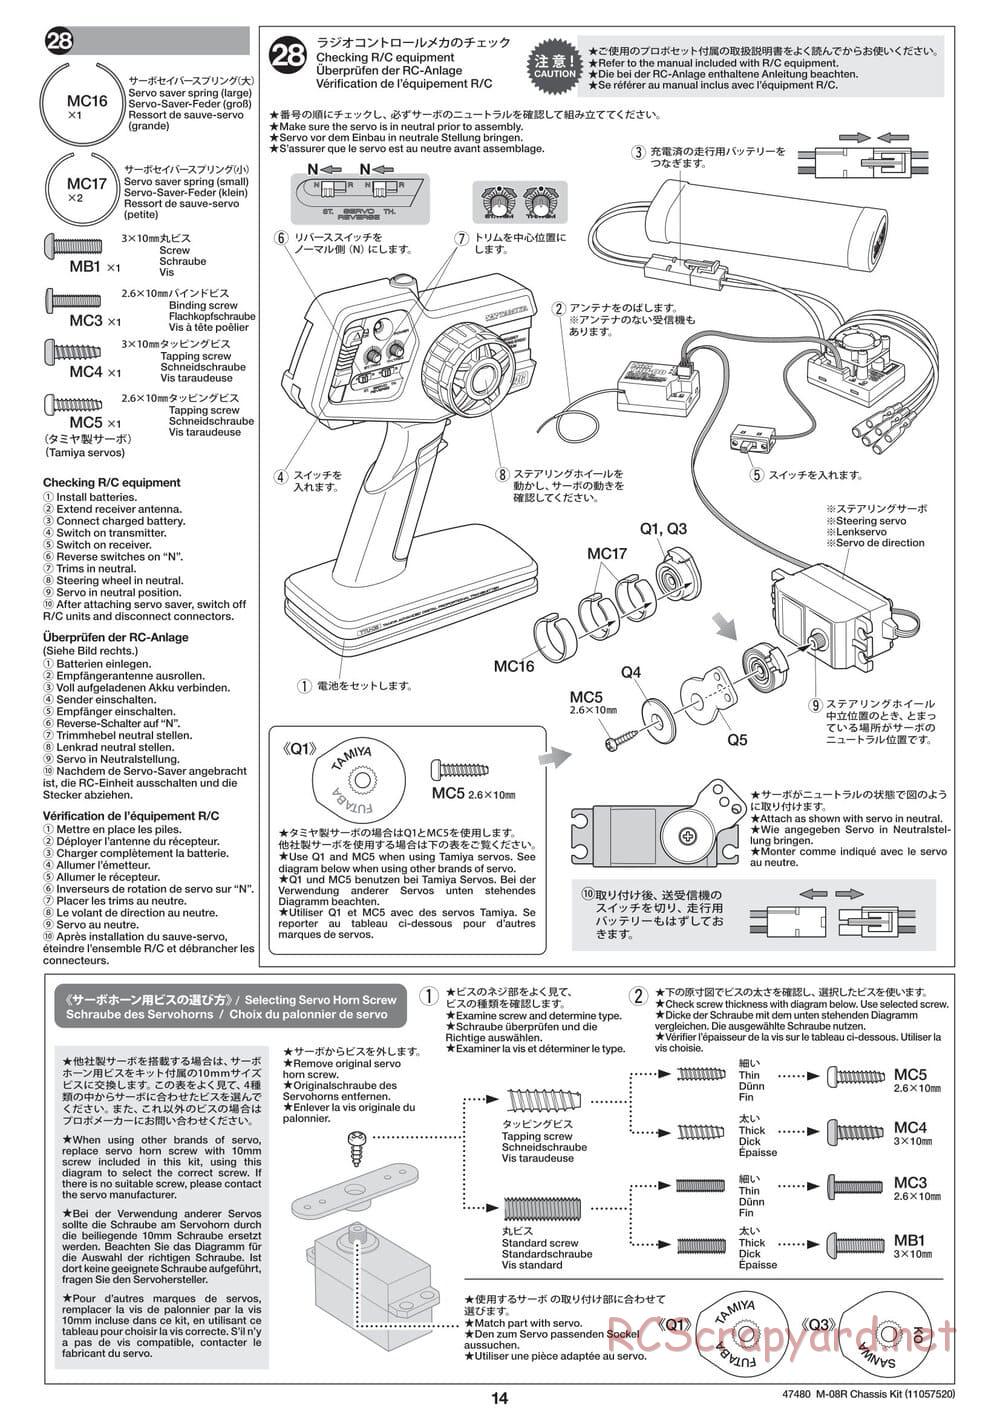 Tamiya - M-08R Chassis - Manual - Page 14